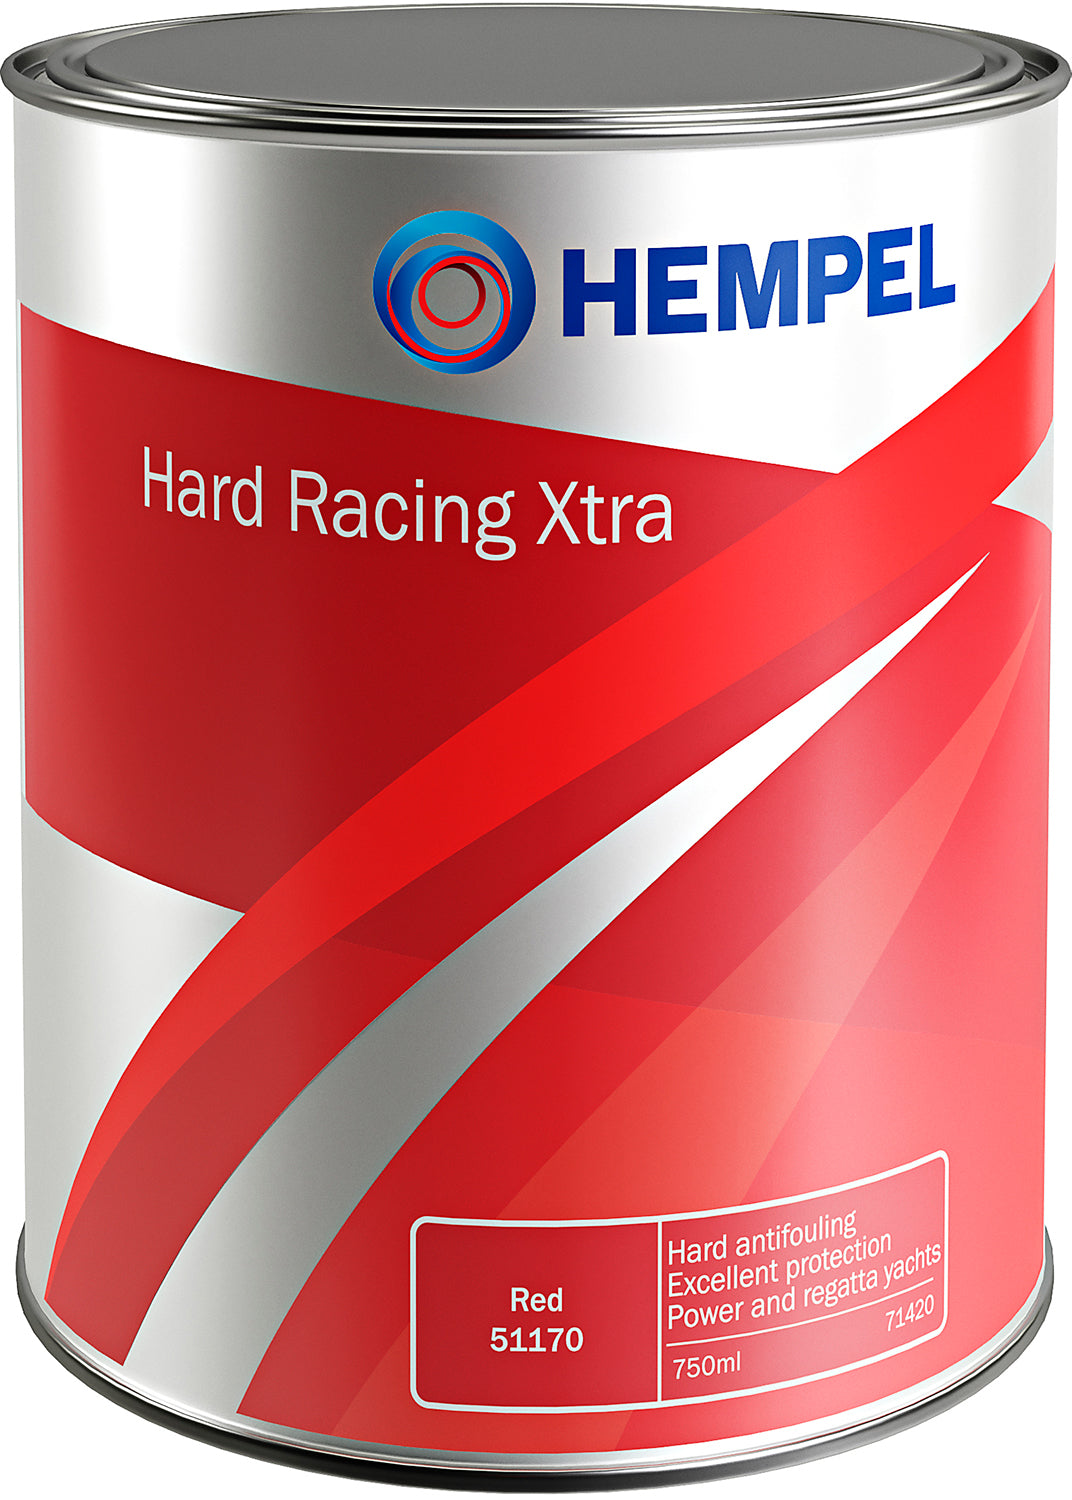 Hard Racing XTRA sort 19990 750ml